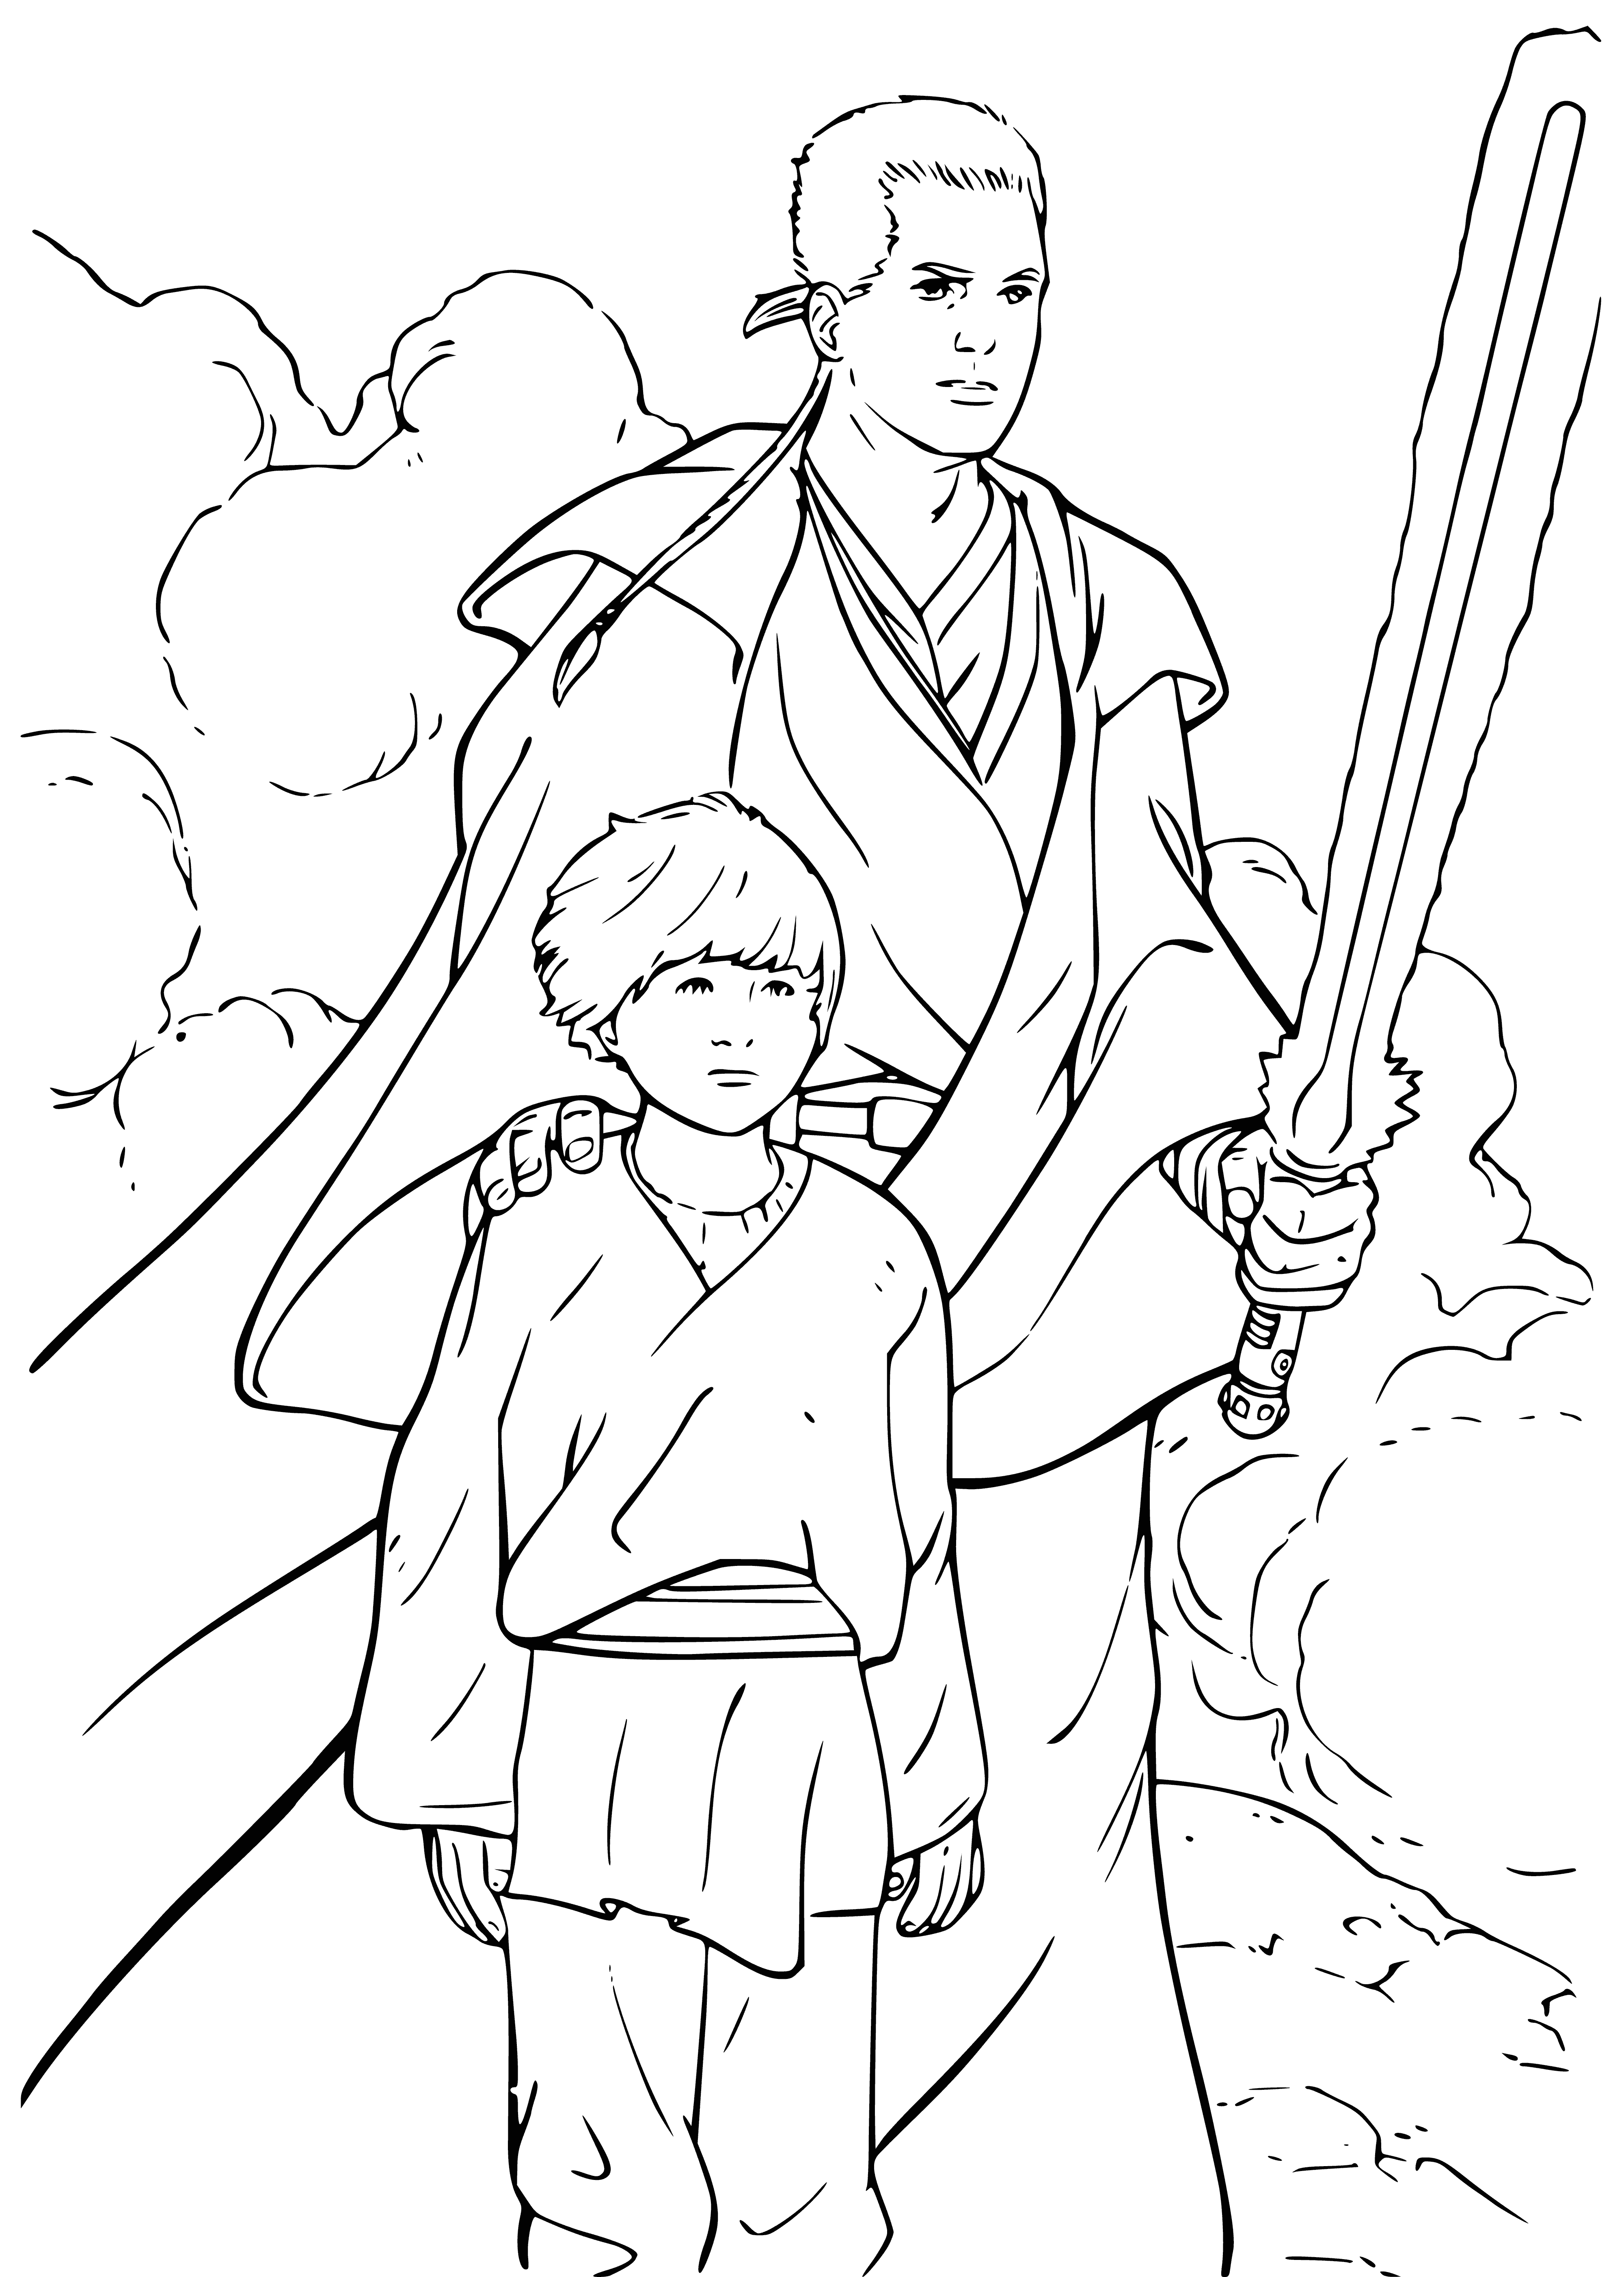 Obi-Wan Kenobi et Anakin Skywalker coloriage